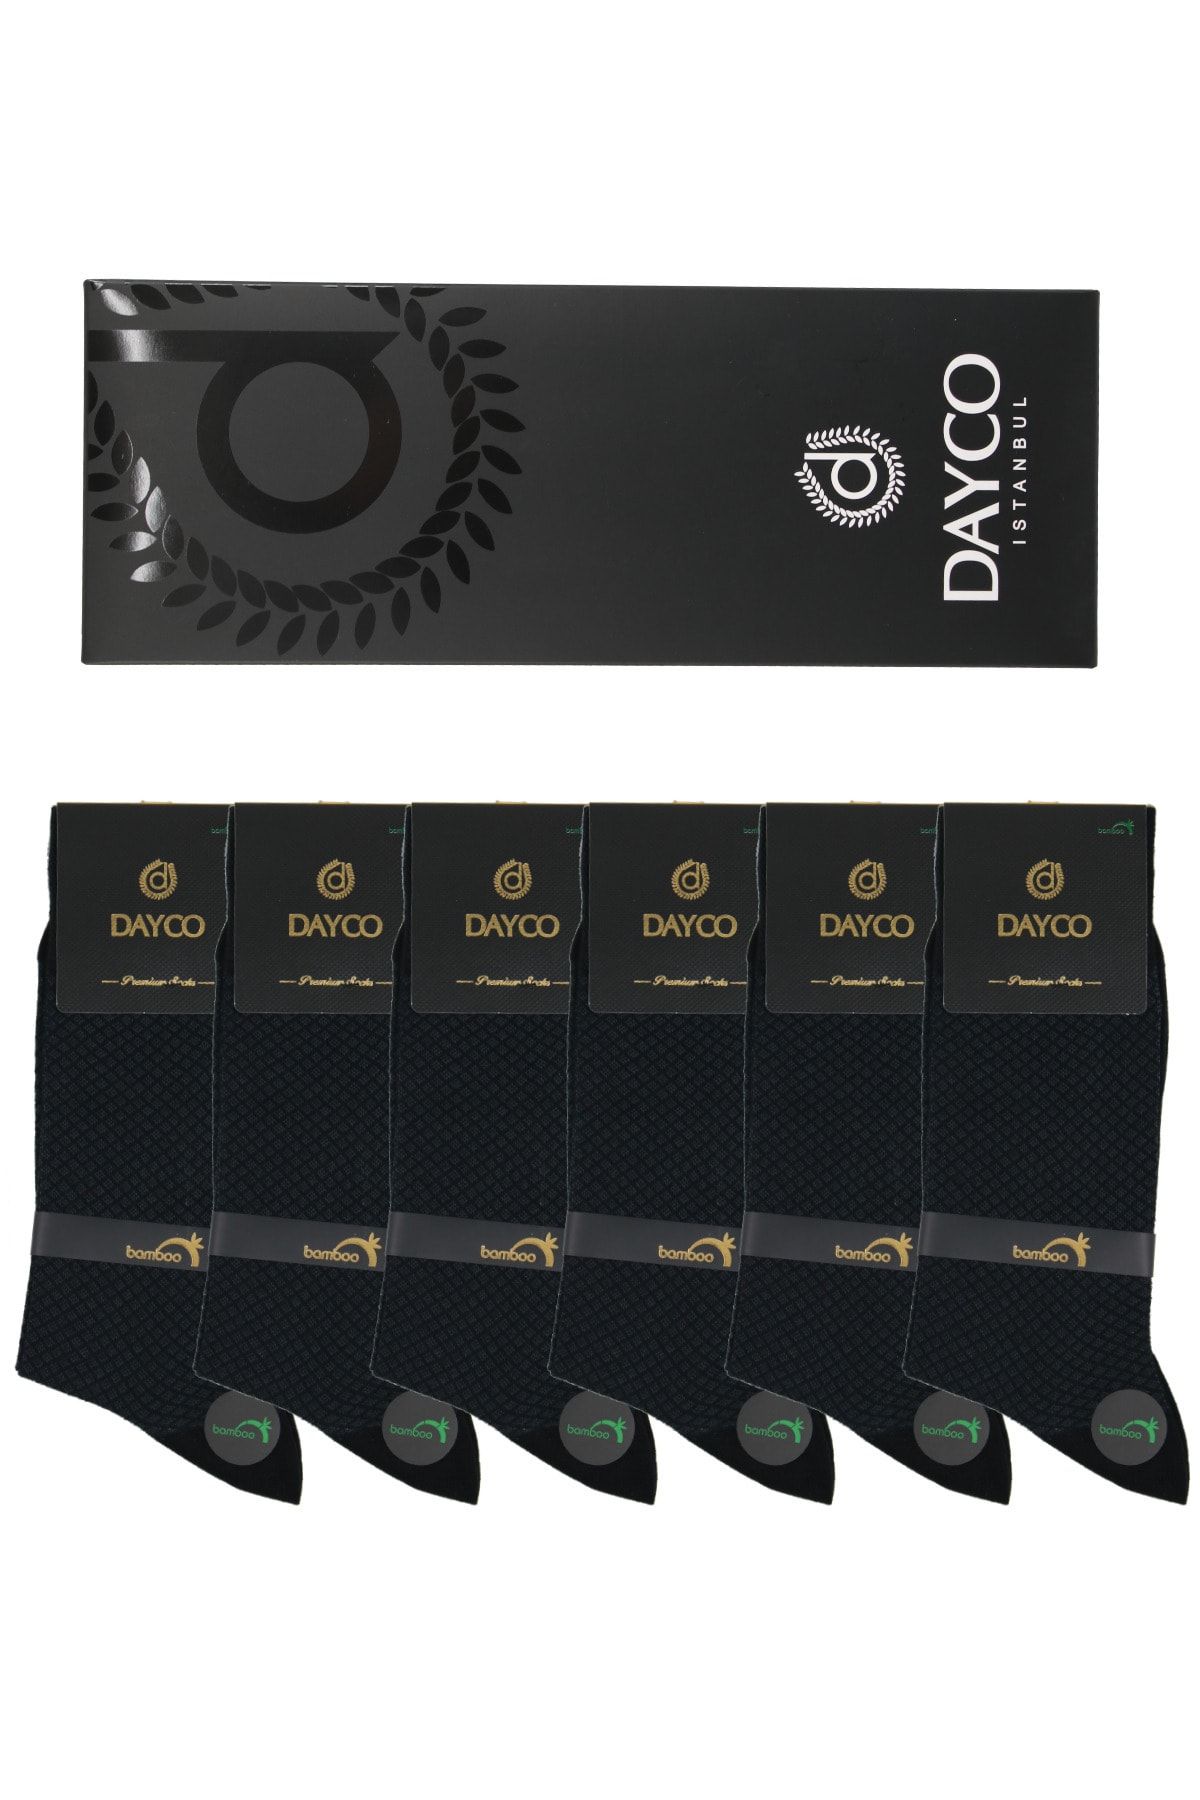 DAYCO Premium Dikişsiz Yazlık Erkek Bambu Soket Çorap 6'lı Jakarlı Set Kutulu - 10269 - 41-44